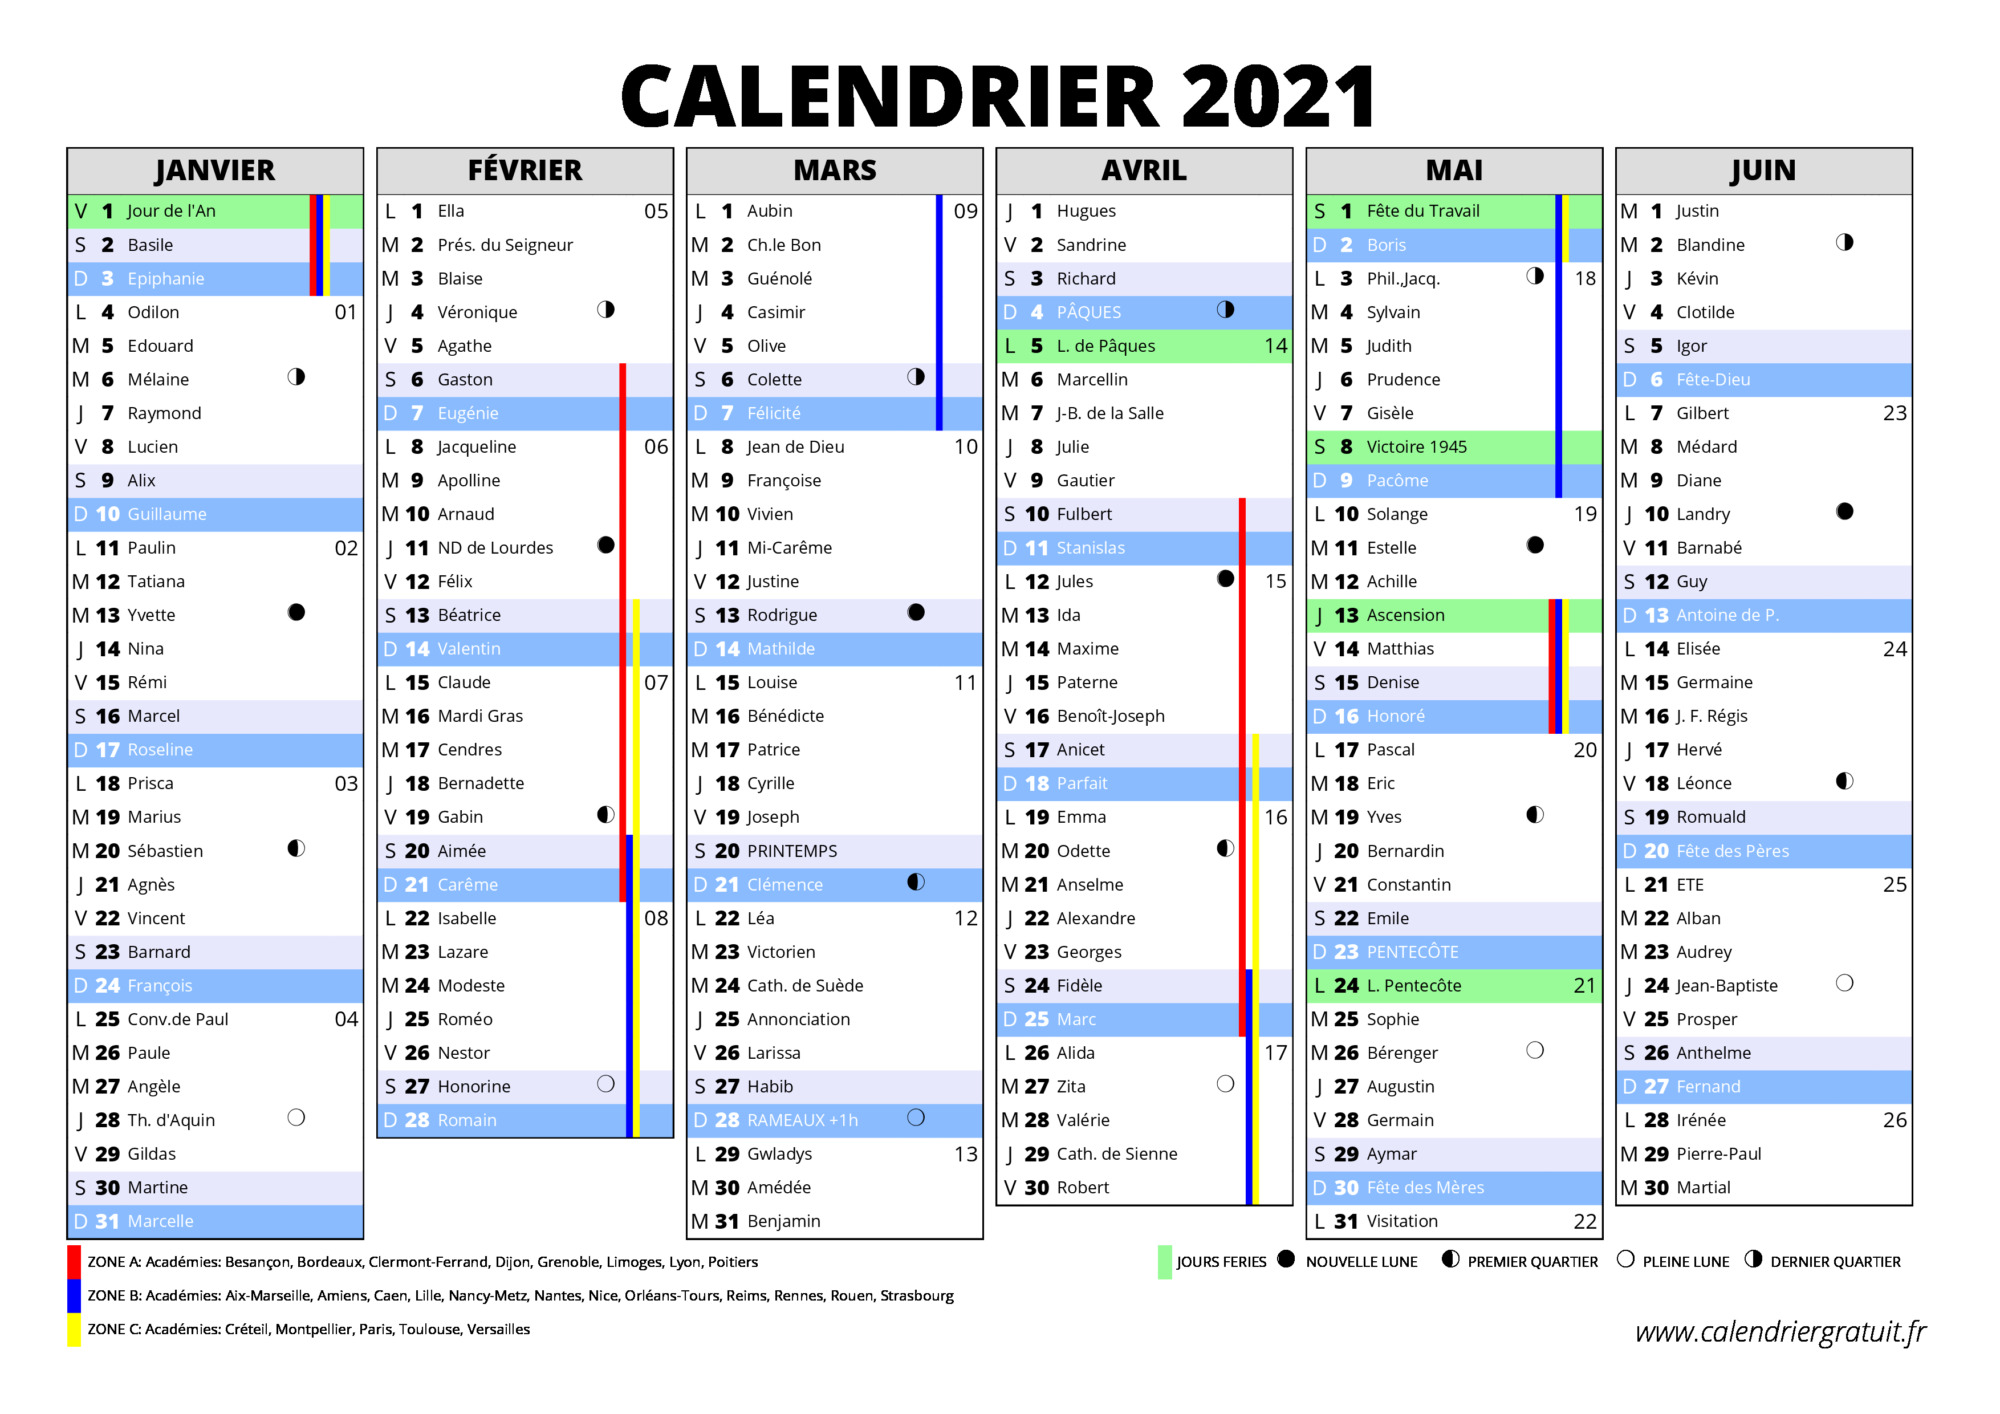 Calendrier Gratuit.fr 2021 Calendrier 2021